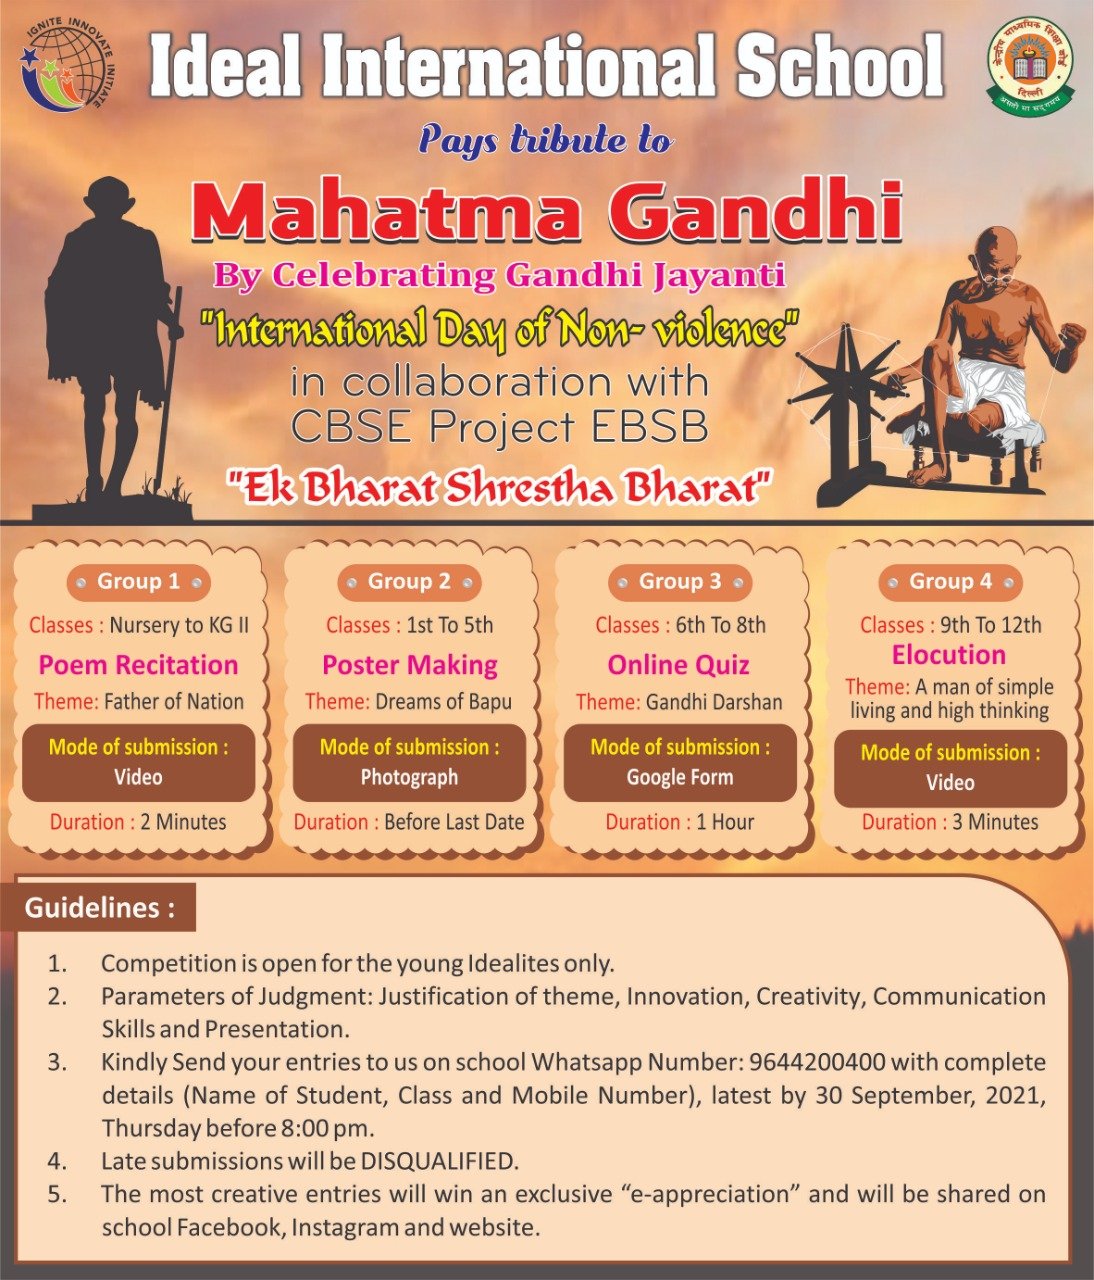 Celebrating Gandhi Jayanti